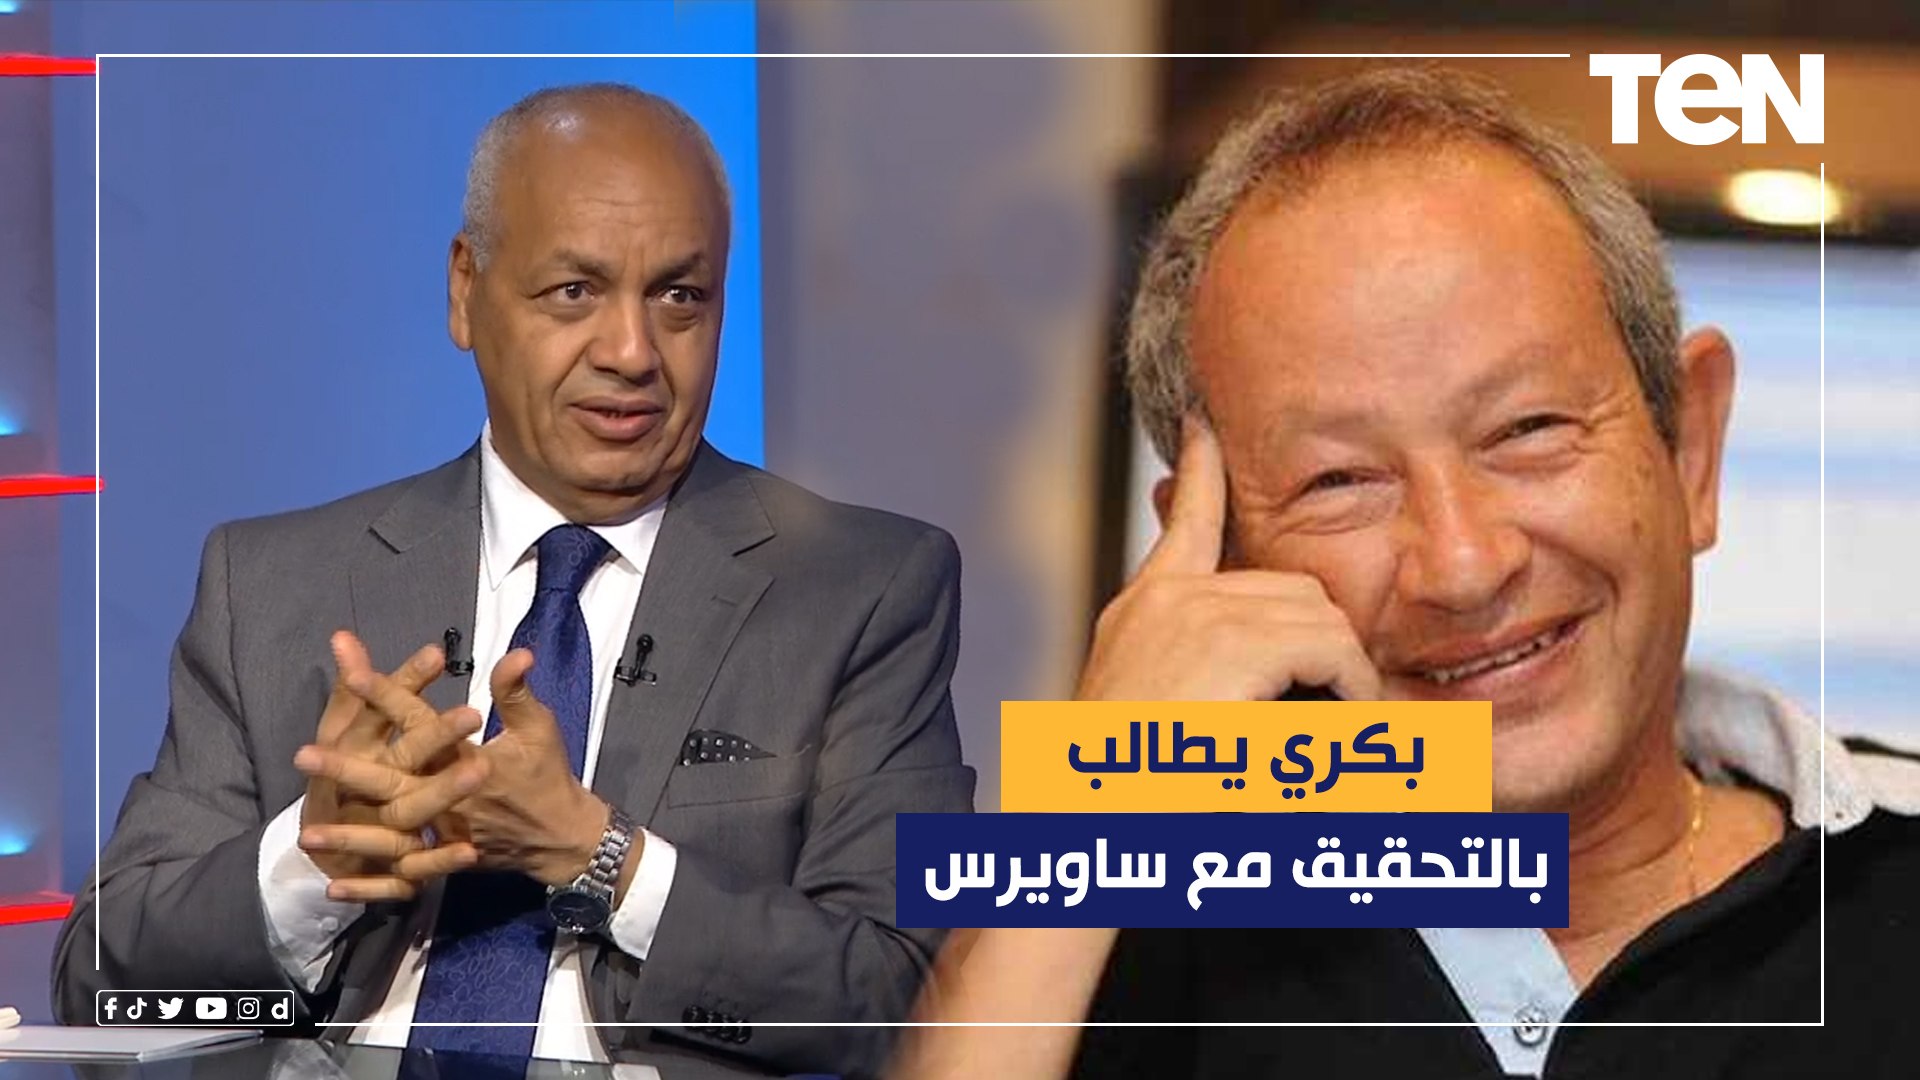 مصطفى بكري يطالب النائب العام بالتحقيق مع ساويرس: "كلامه يصب في خانة  الإخوان" - فيديو Dailymotion